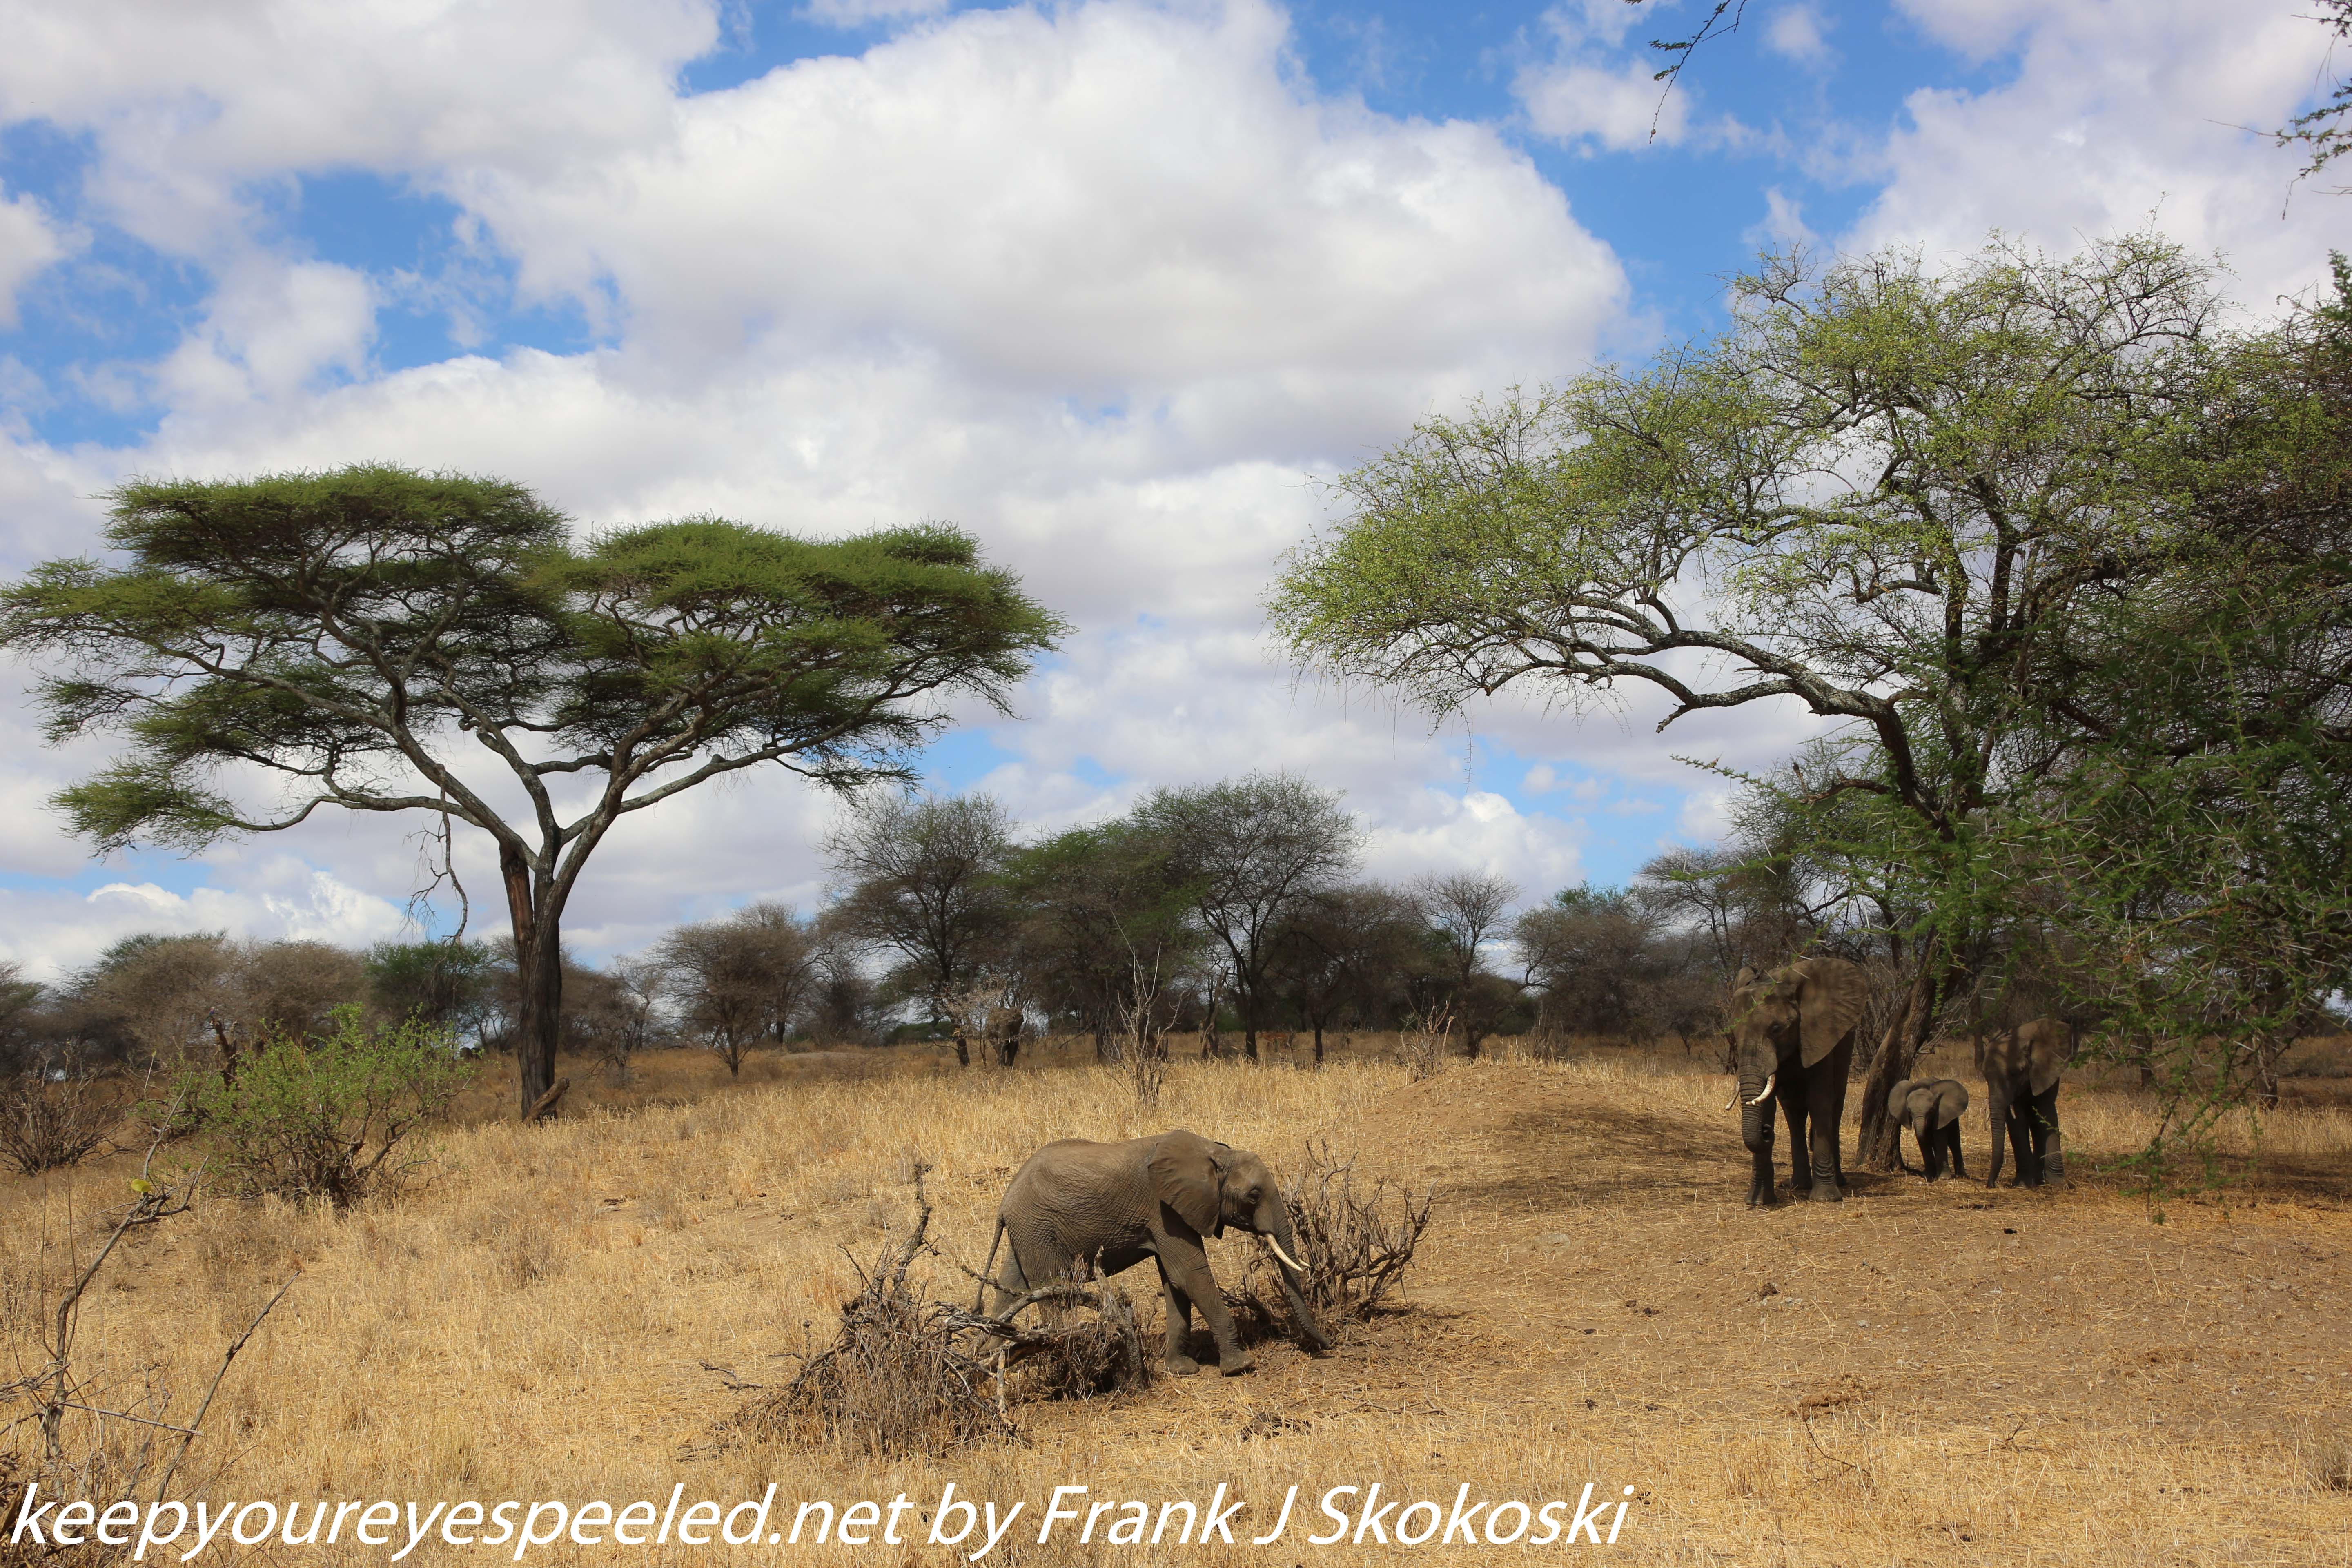 Tanzania-Day-Seven-Tarangire-elephants-14-of-31